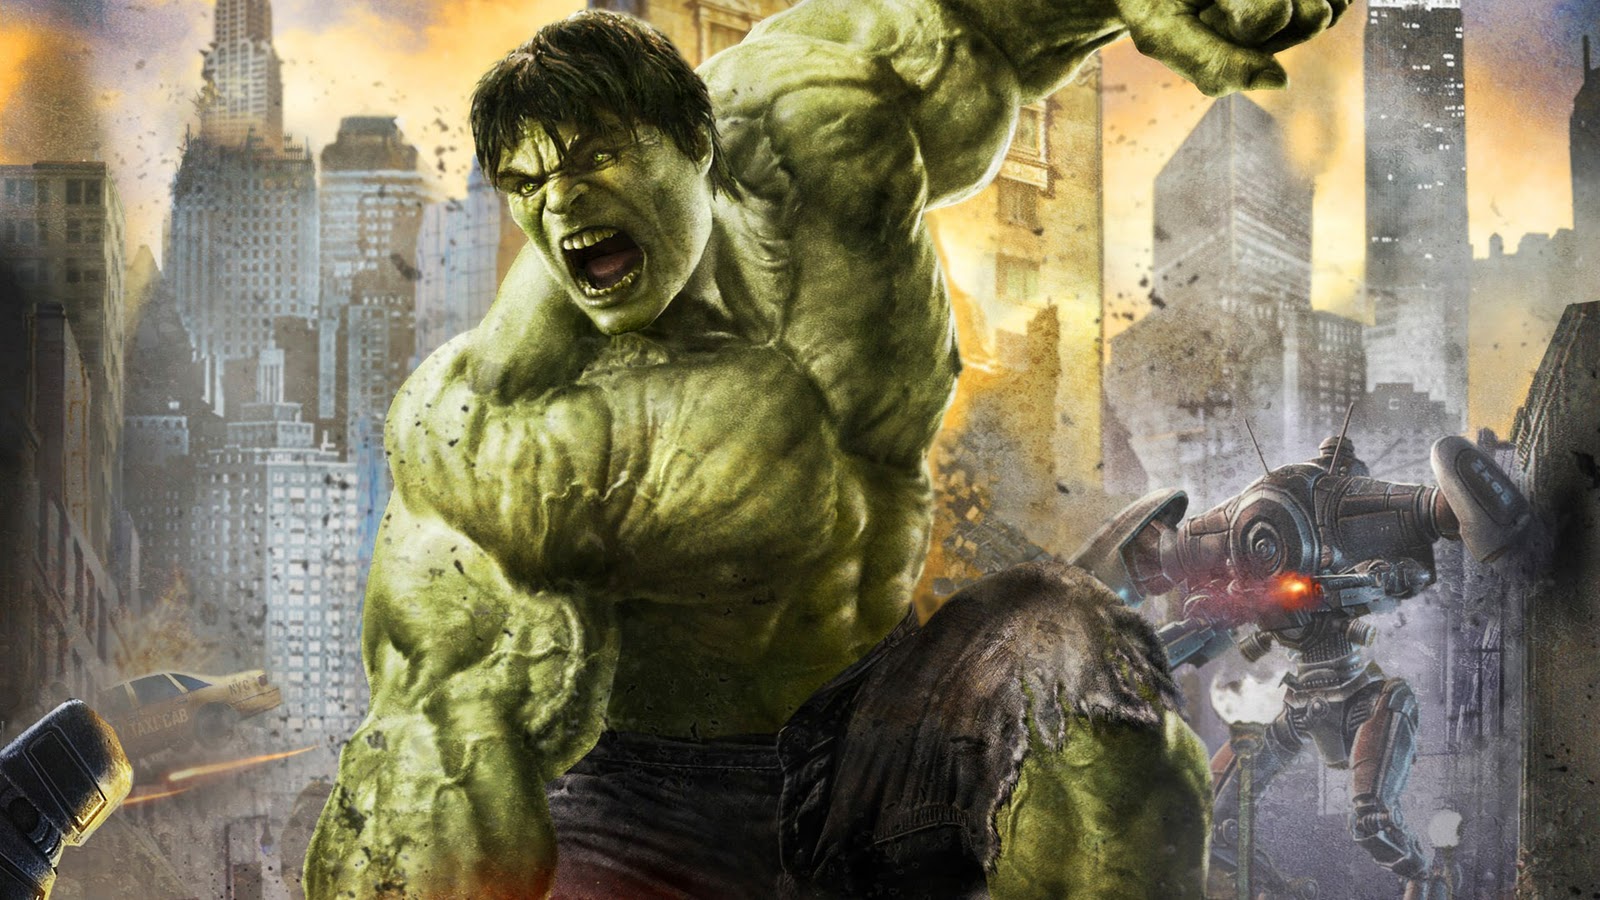 Incredible Hulk" wallpapers